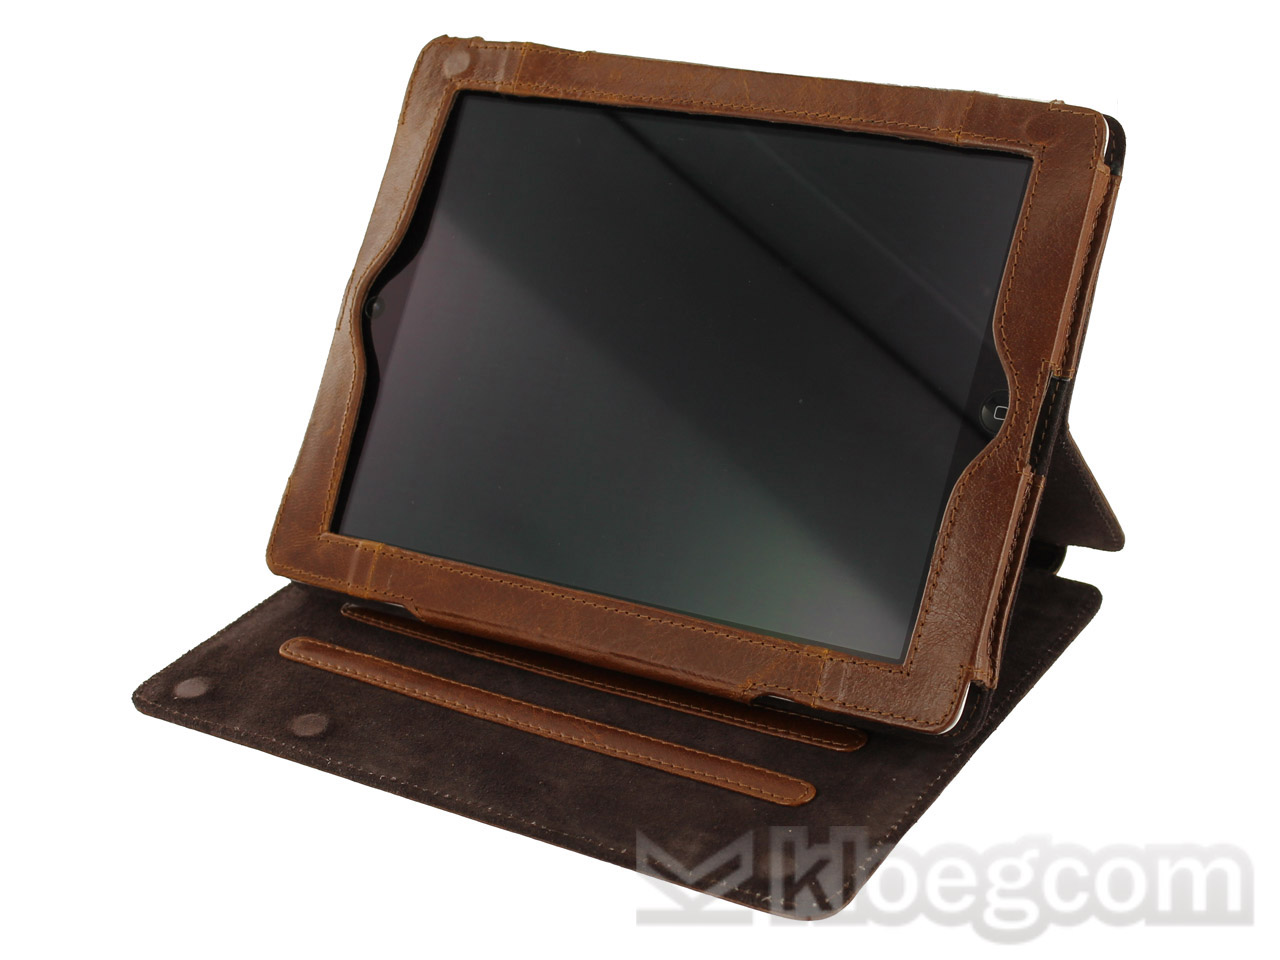 Czanne Lederen Stand Case Hoes voor iPad 2, 3 & 4